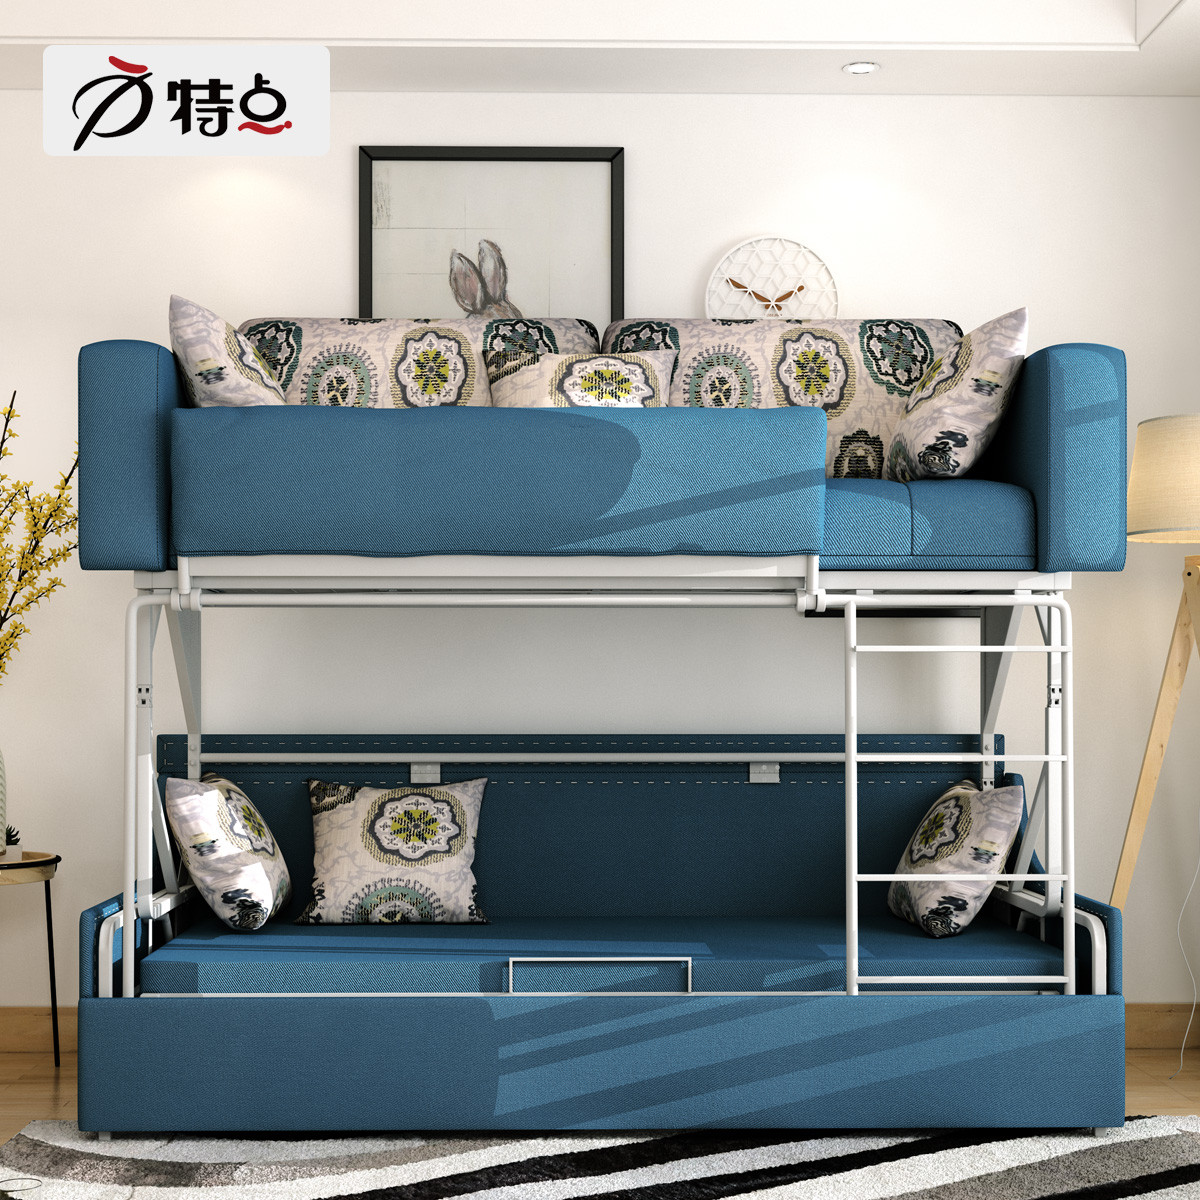 沙发床上下床可折叠多功能布艺双人两用上下床双层卧室客厅高低床